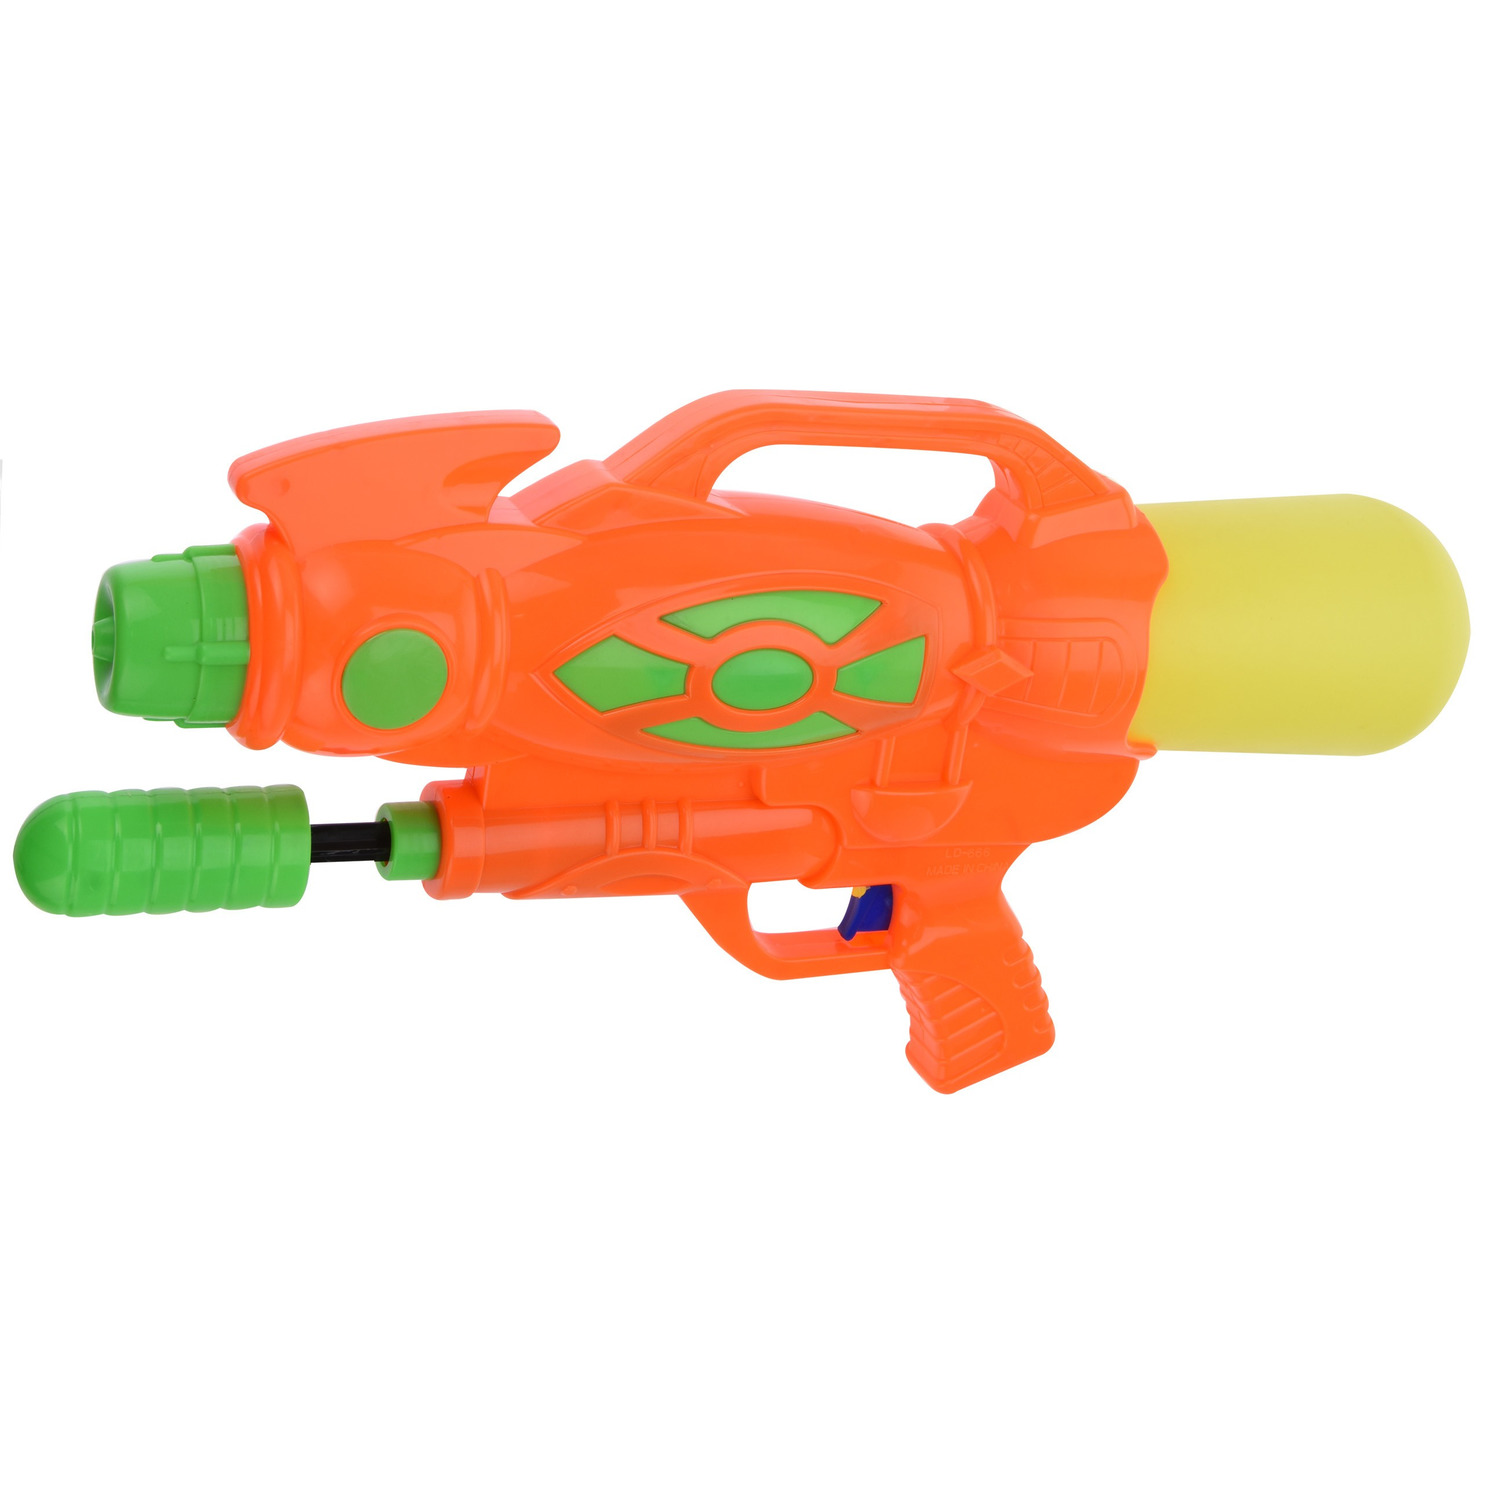 1x Waterpistolen/waterpistool oranje van 47 cm kinderspeelgoed